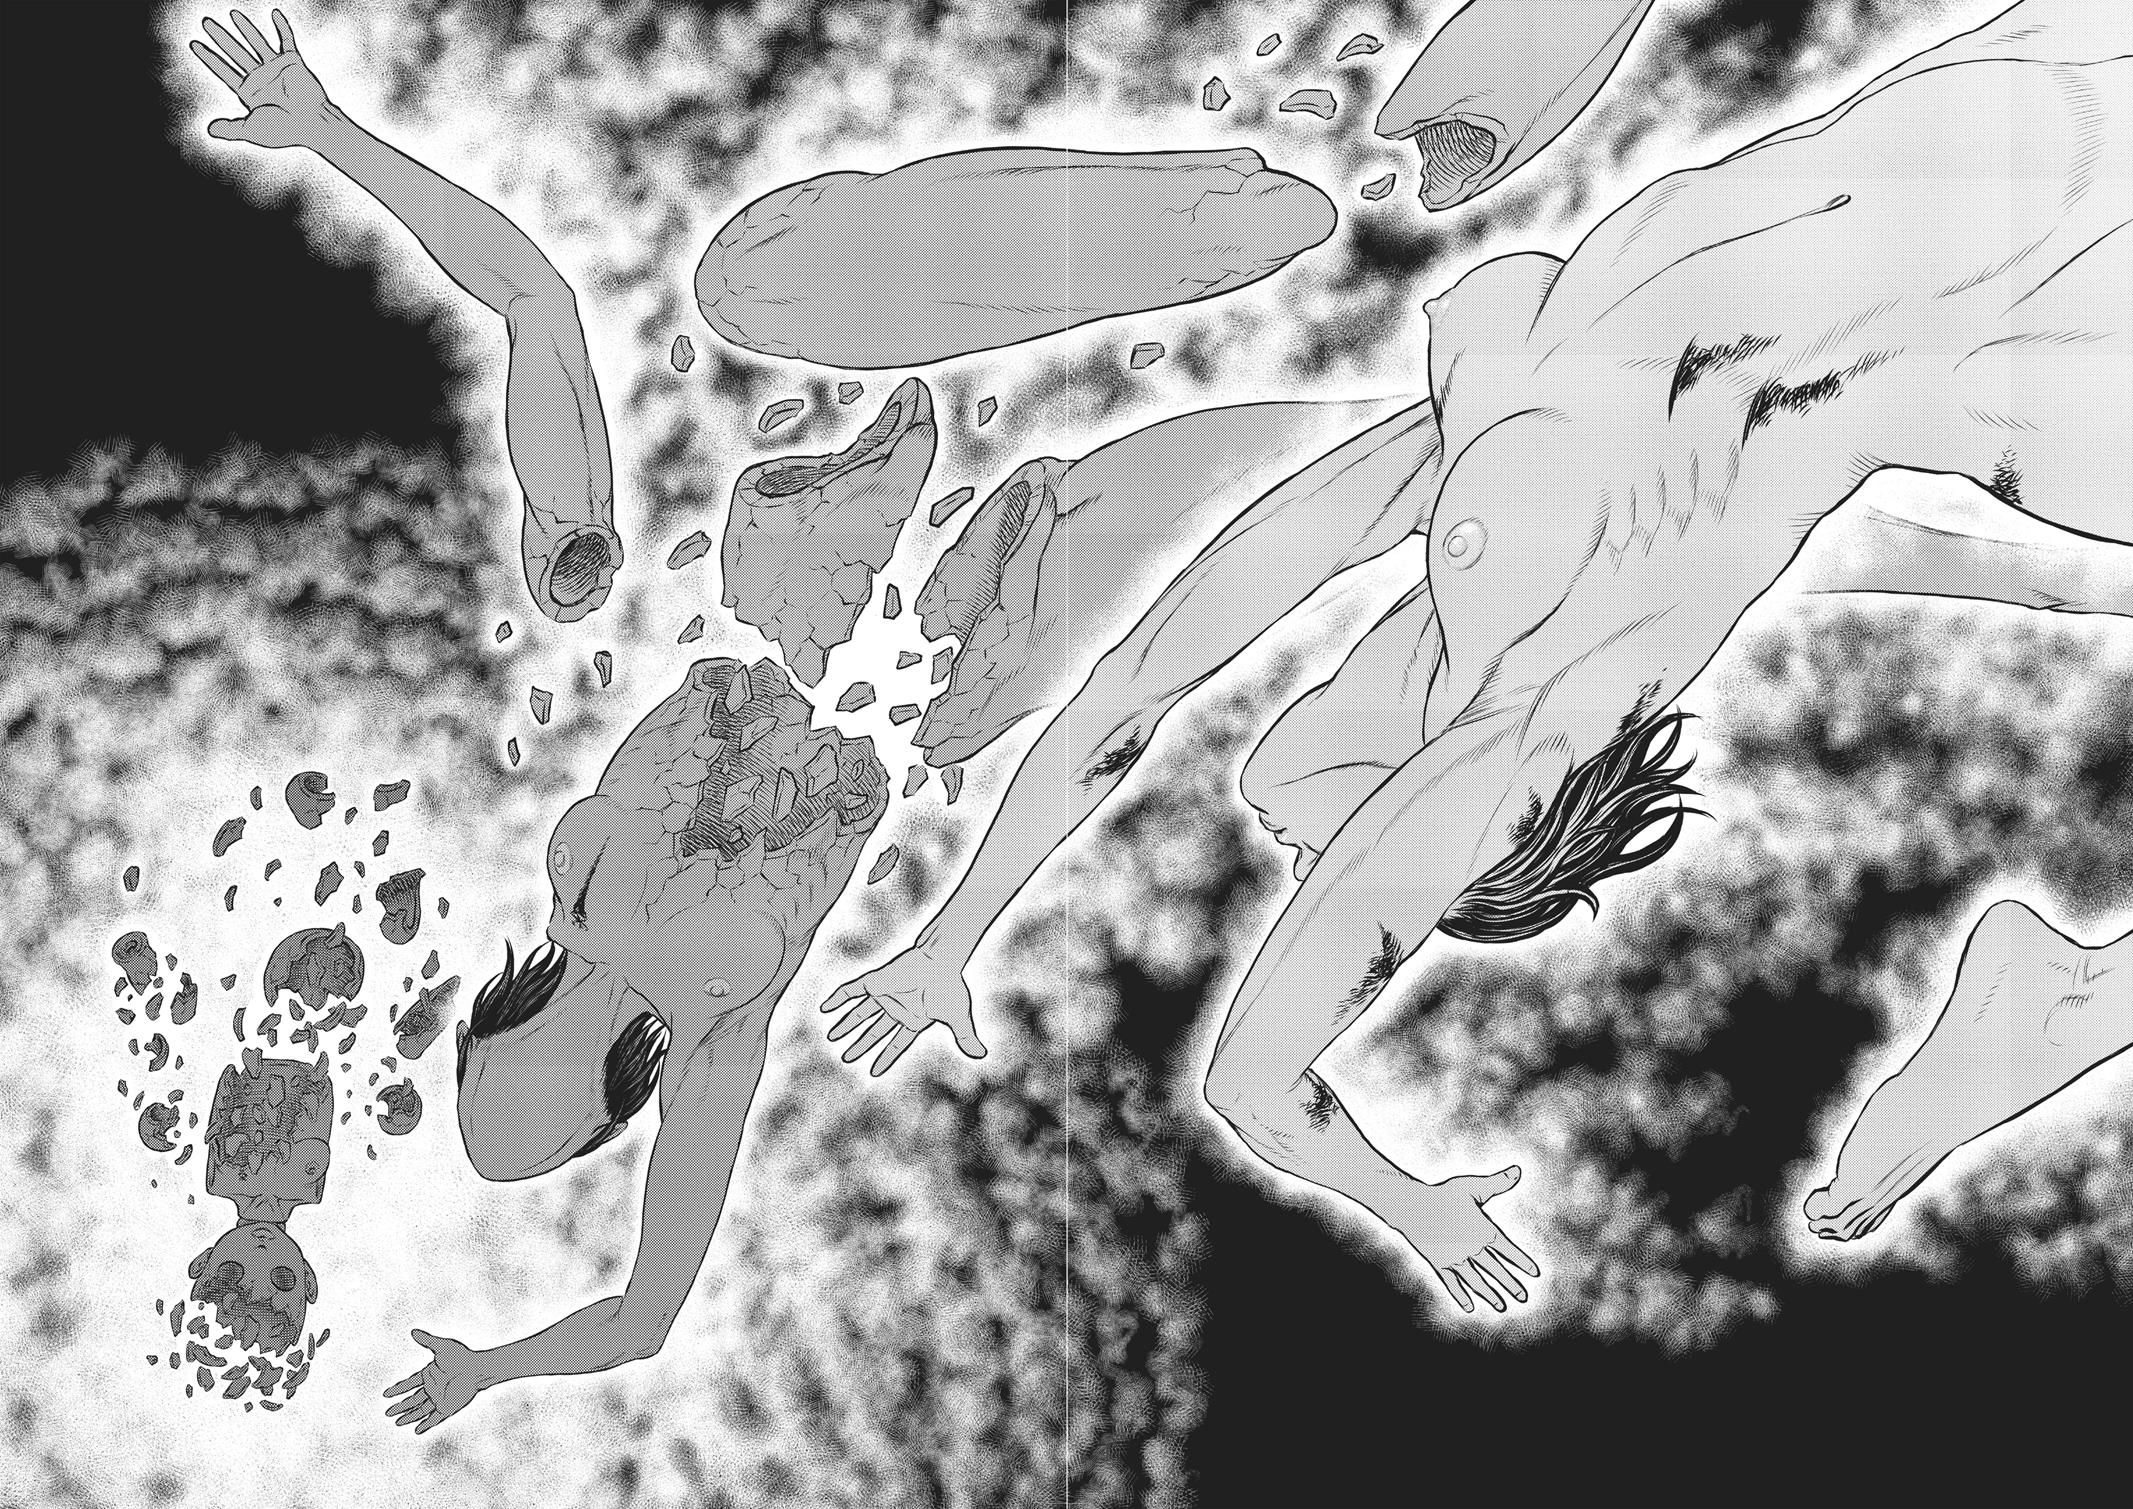 Berserk Manga Chapter 354 image 05